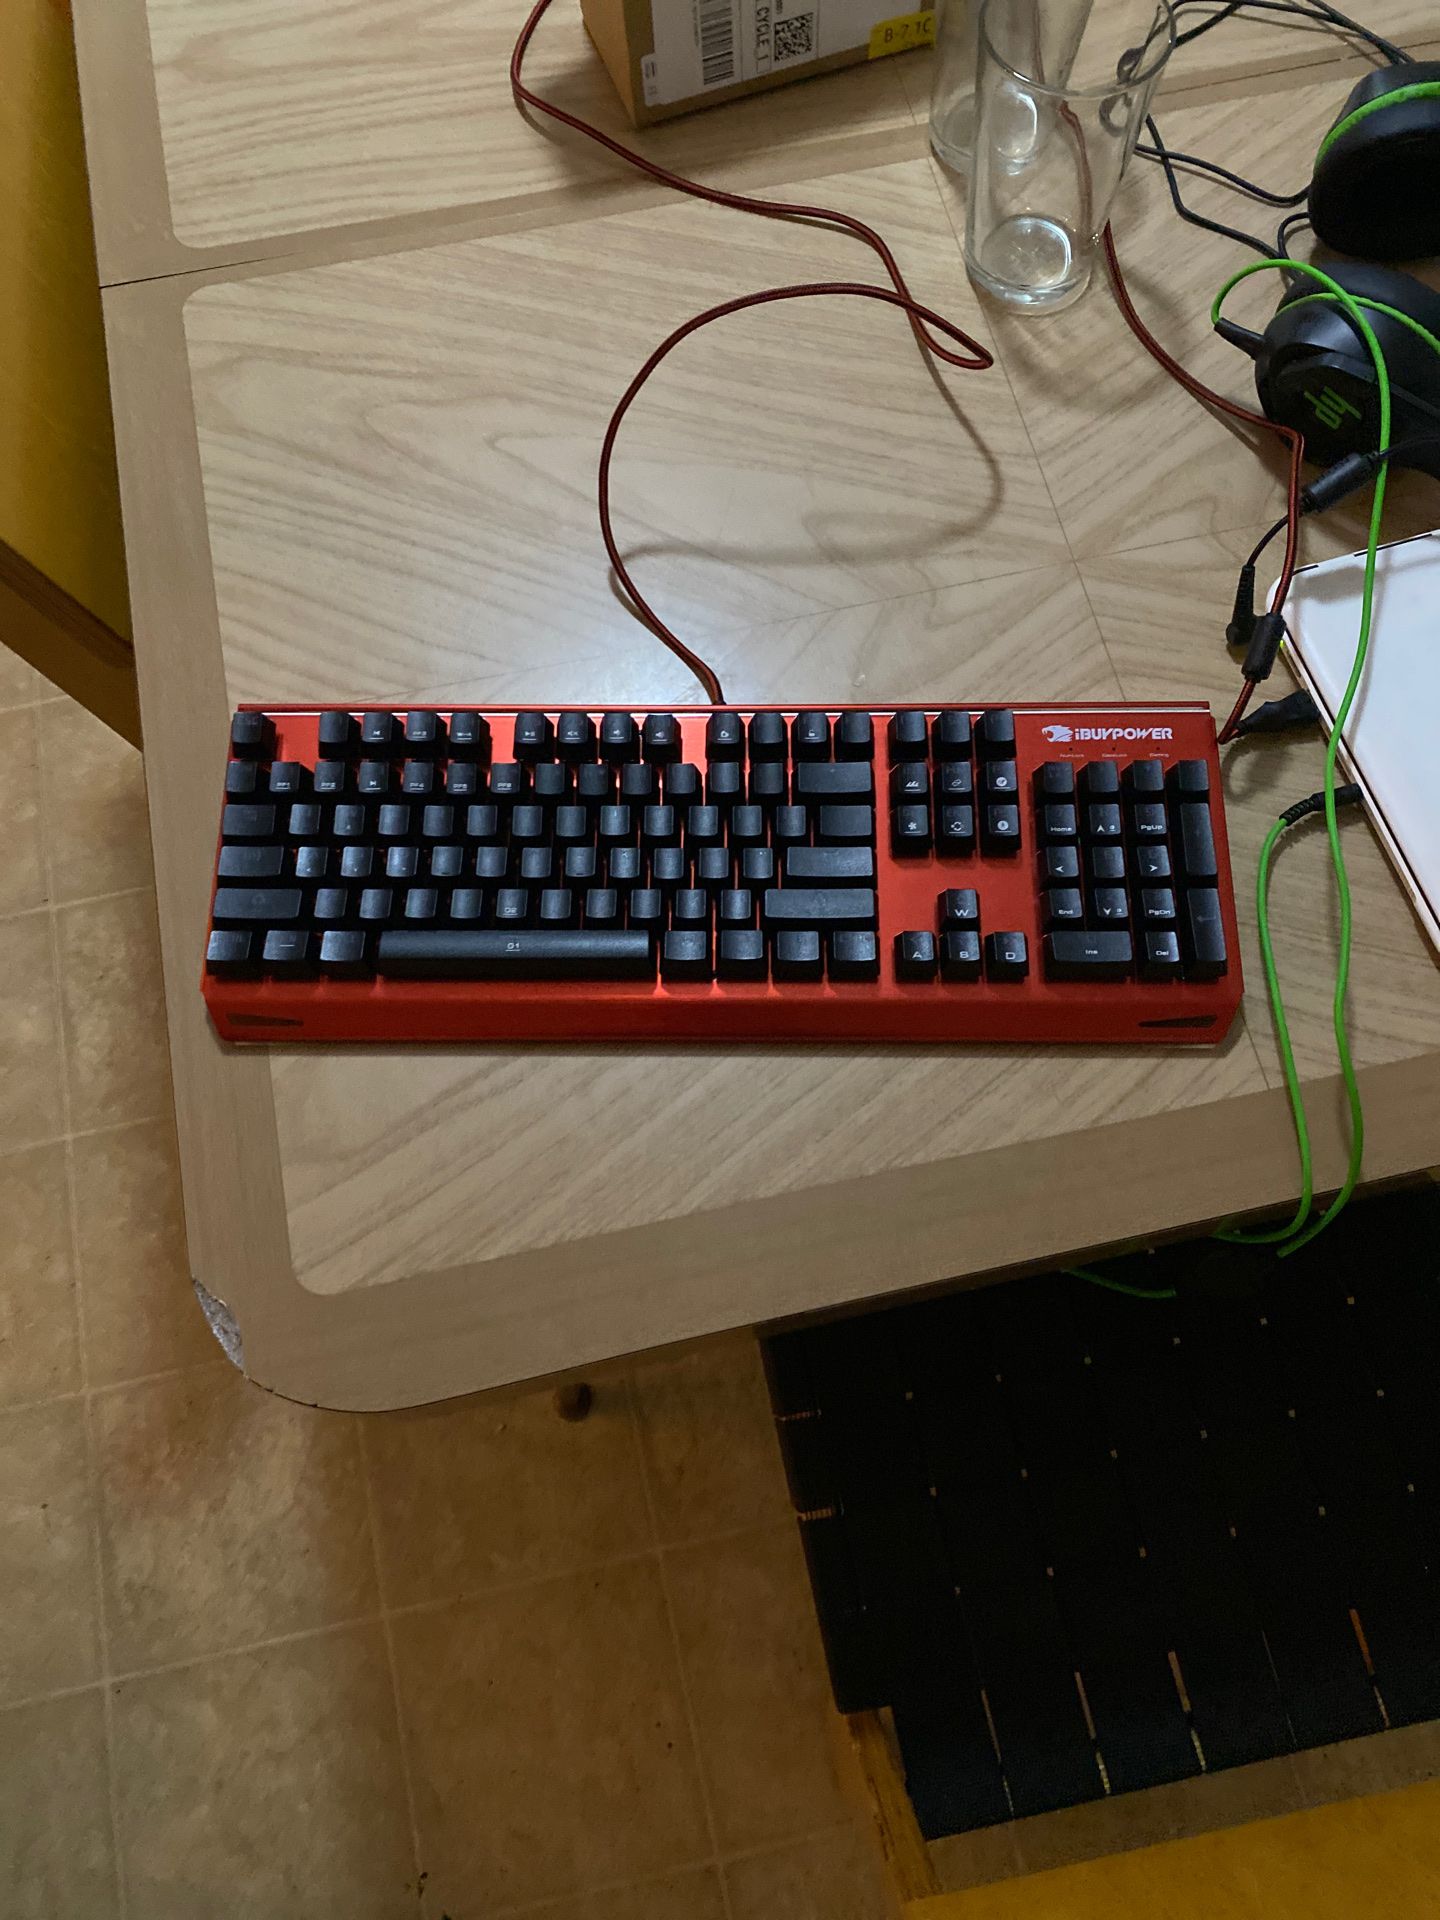 IBuyPower gaming keyboard with rgb